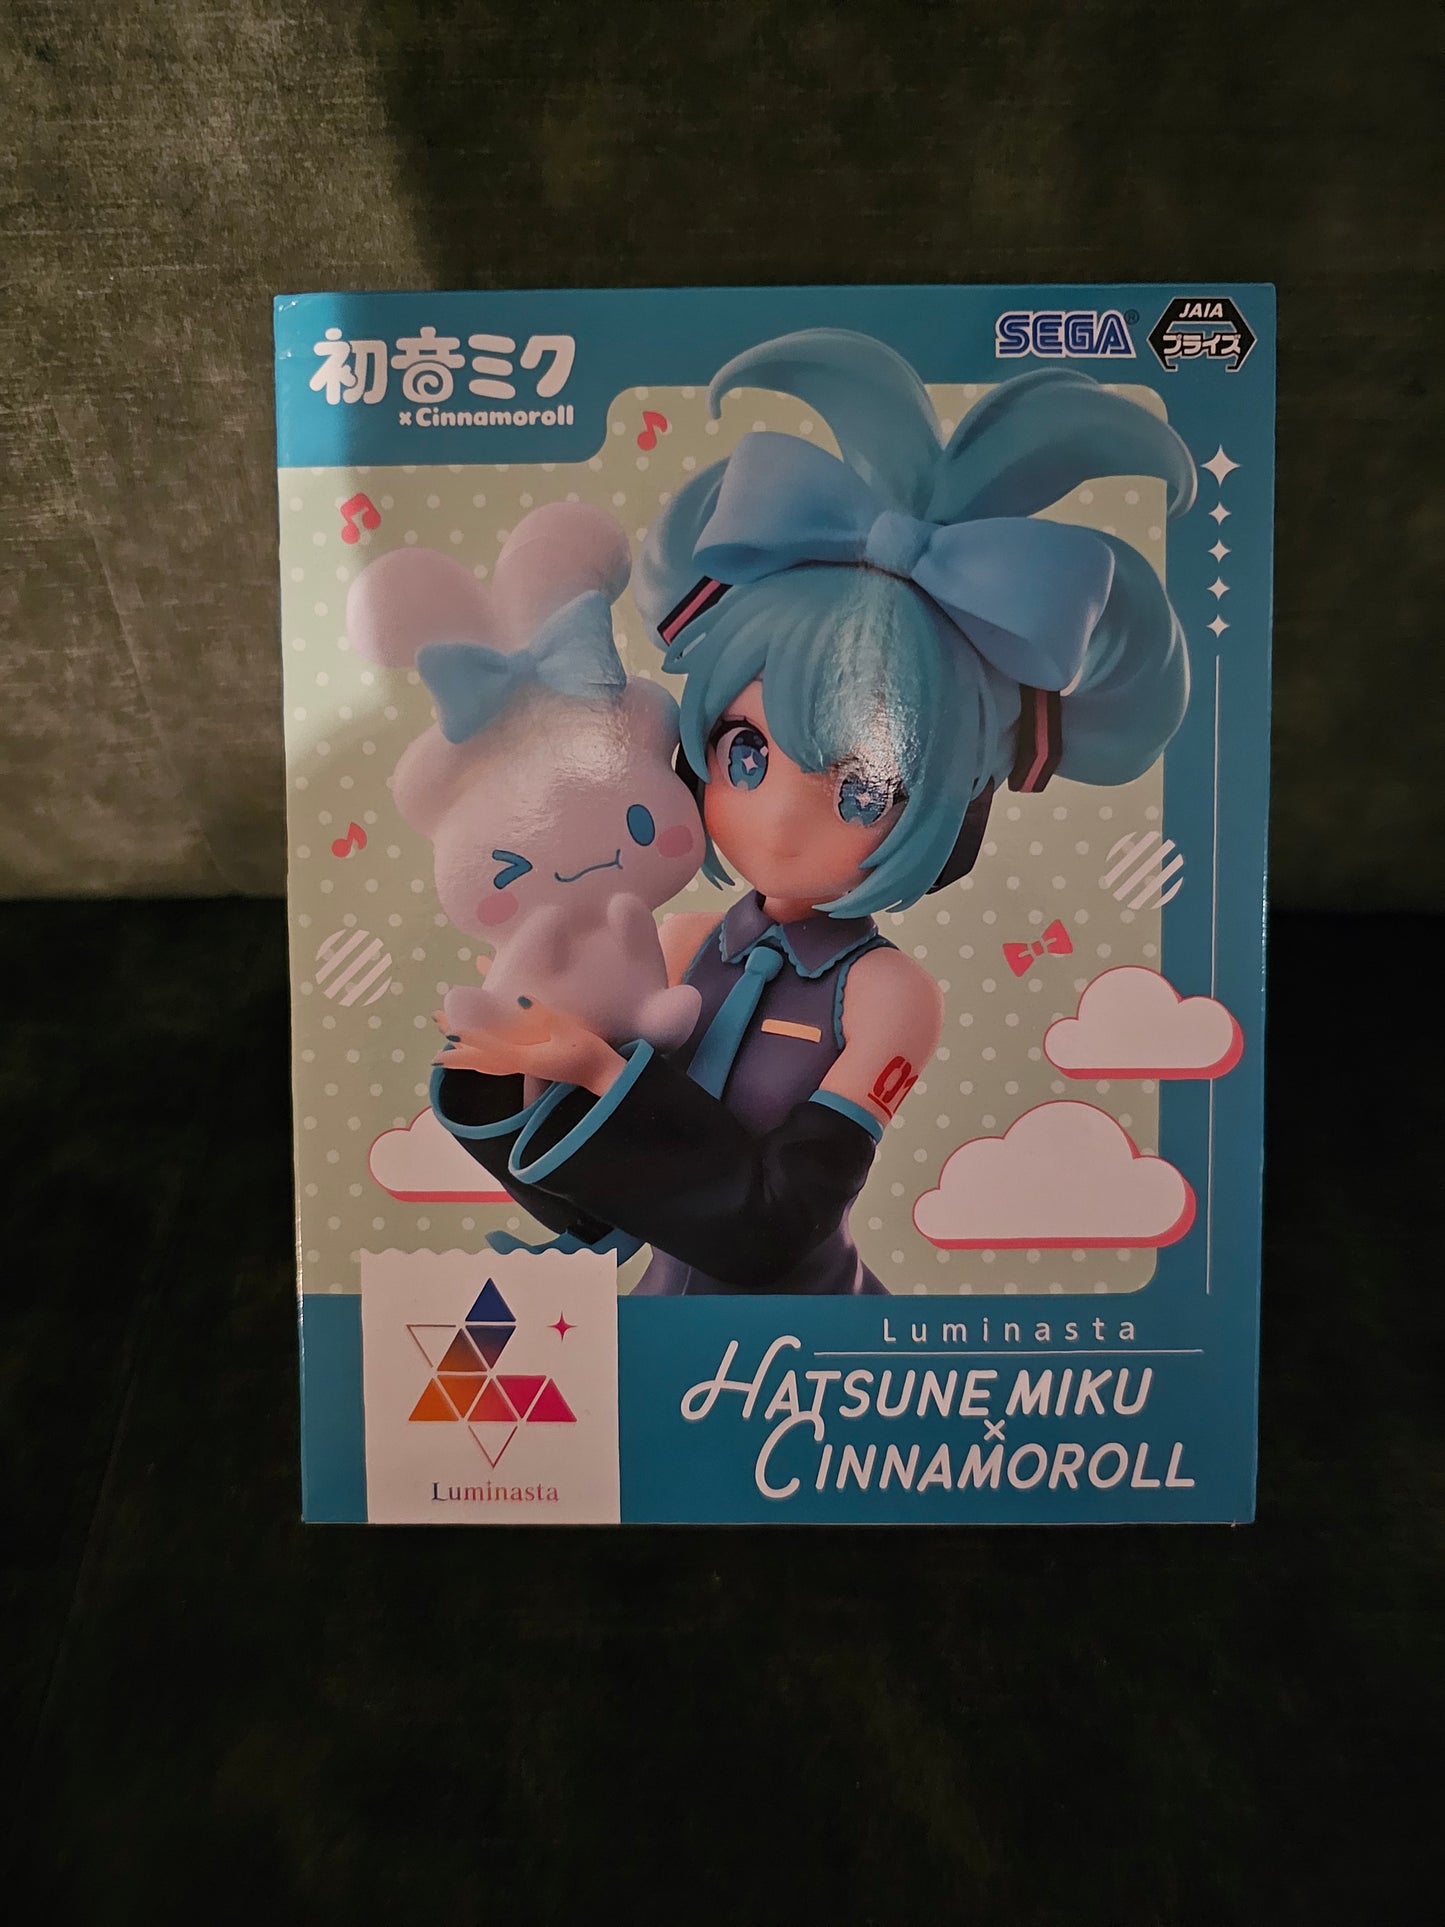 Hatsune Miku - Hatsune Miku x Cinnamoroll Luminasta - Sega Prize